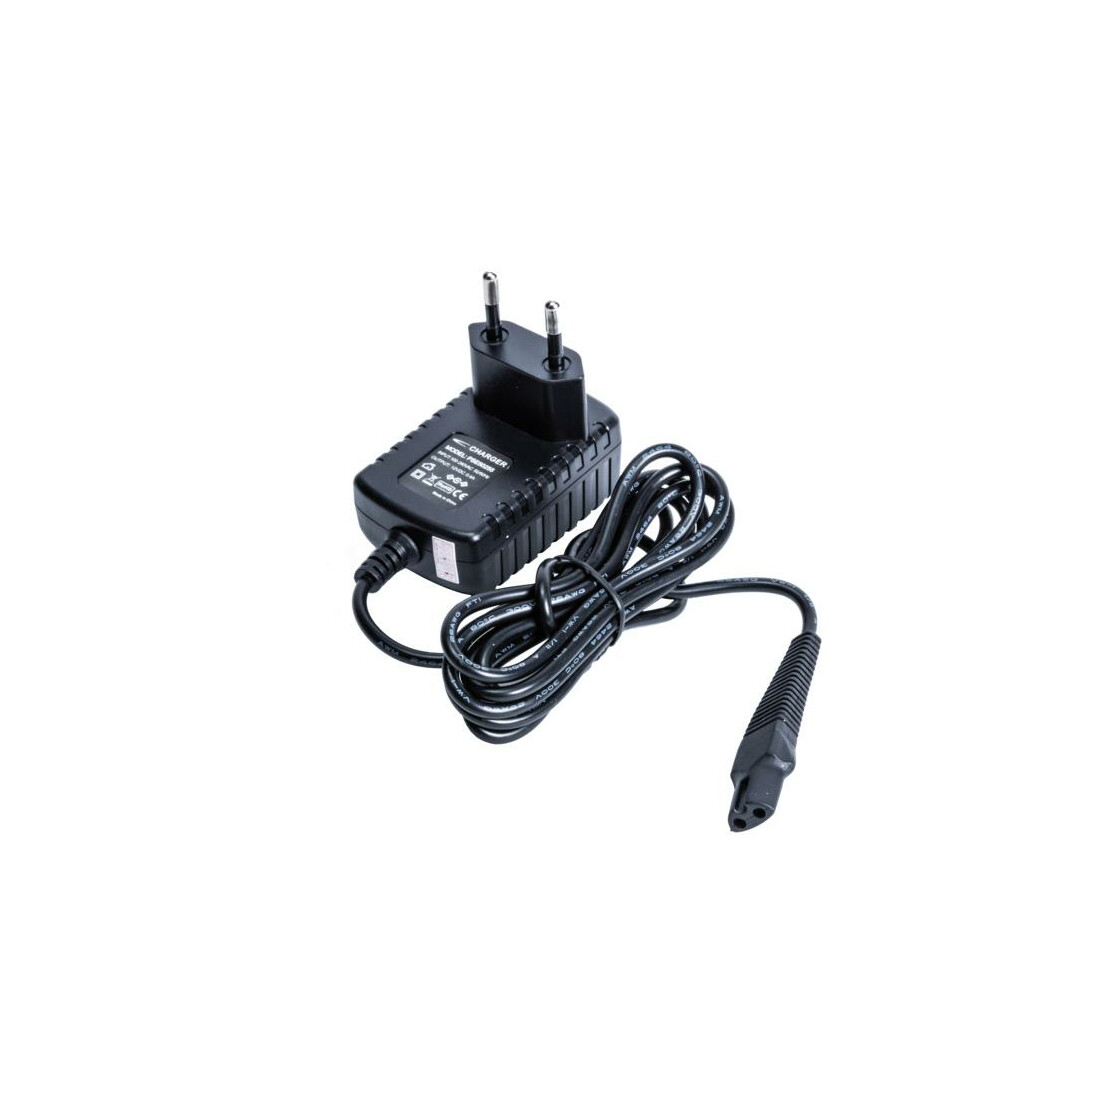 Ladegerät Ladekabel Netzteil Adapter für Braun Series 3 310s Elektrorasierer 